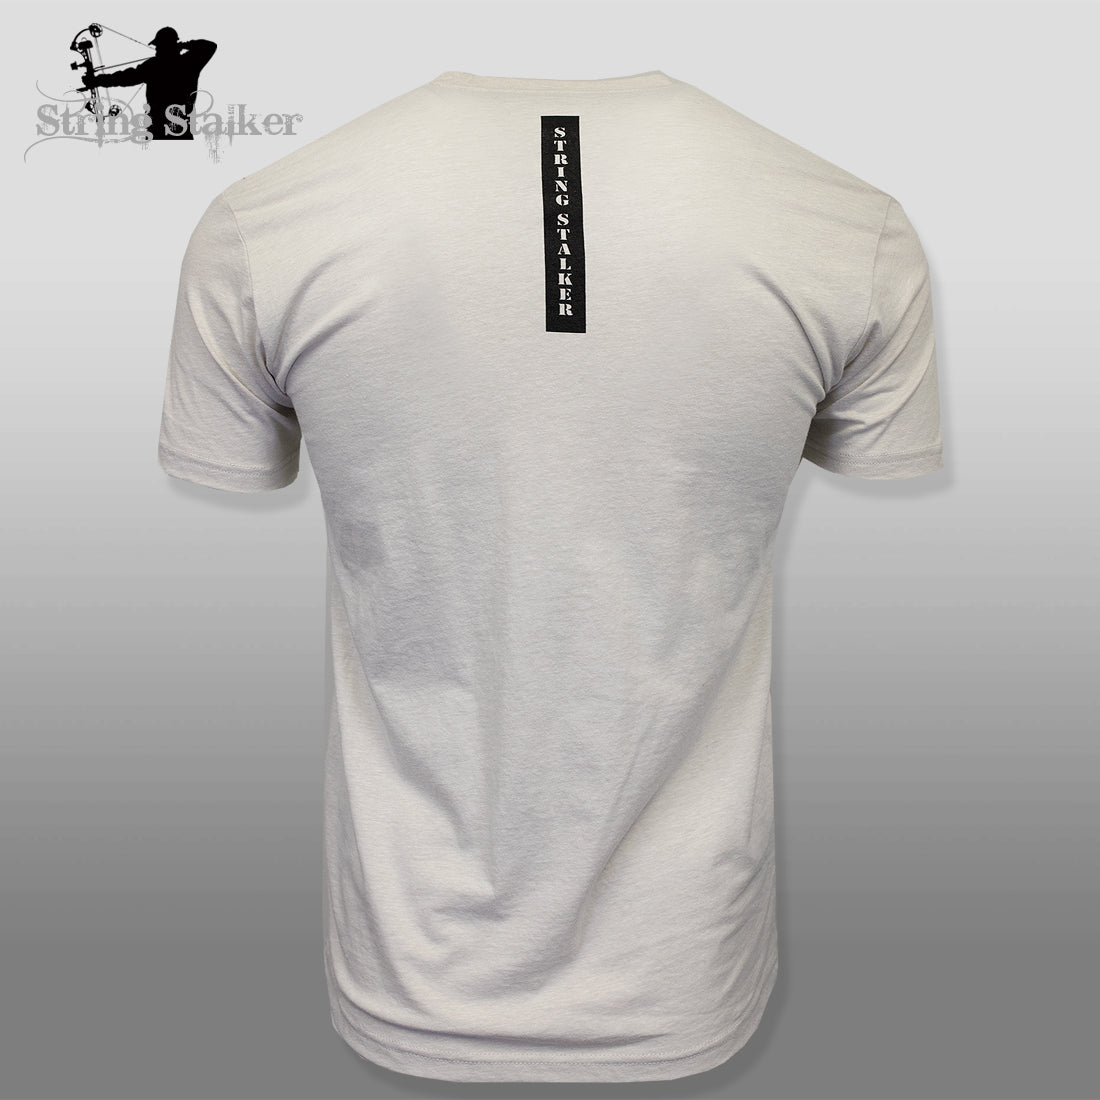 String Stalker Bow Hunting Distressed Site Logo Short Sleeve Super Soft T Shirt - Sand - String Stalker